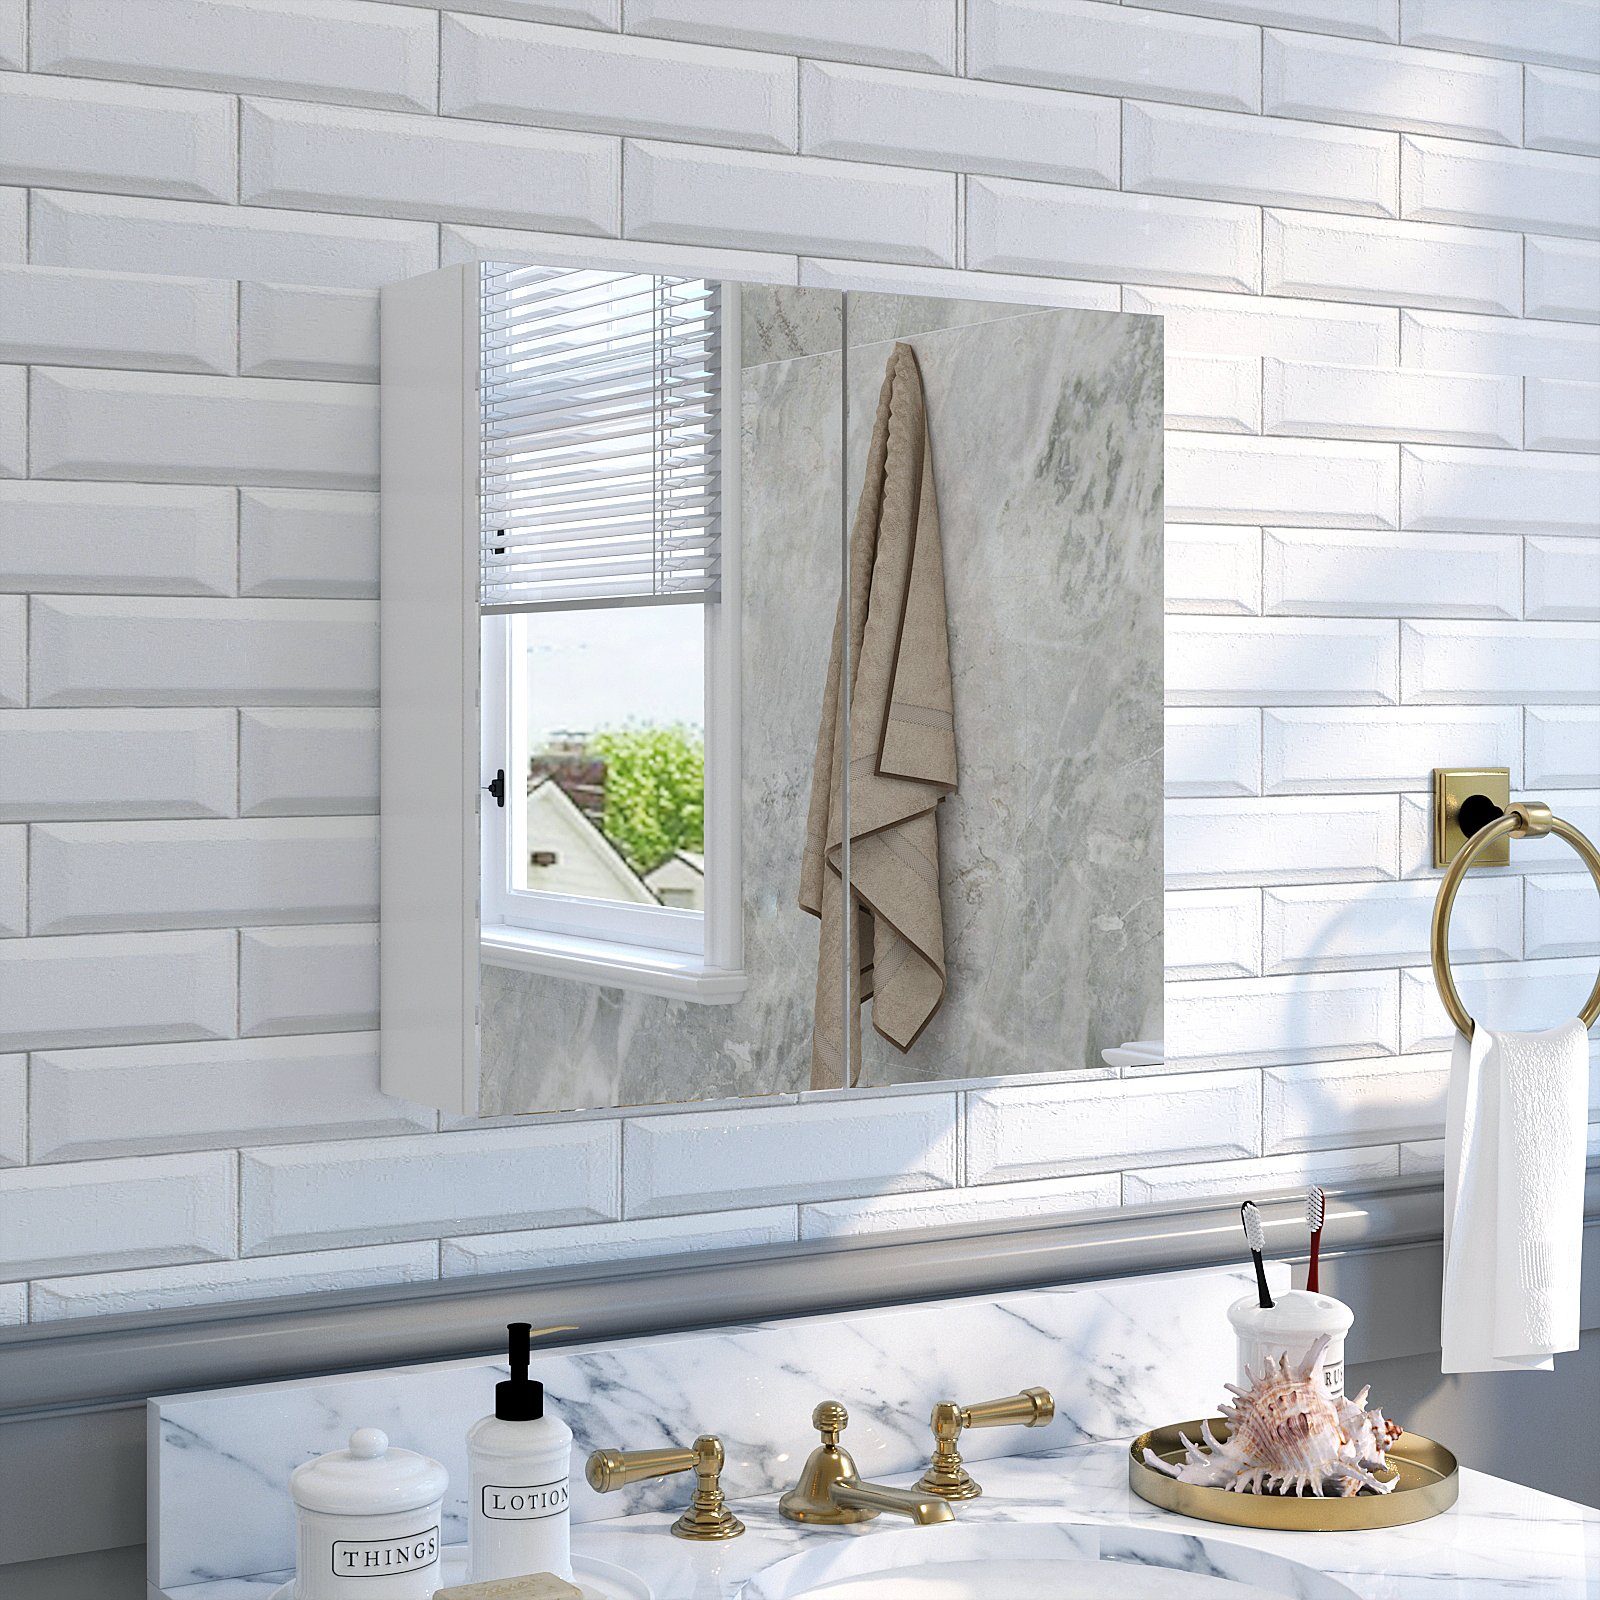 Hängeschrank, Badezimmerspiegel 2 12.9 Türen mit Wandschrank, Mondeer 45 45 x x Badezimmerspiegelschrank cm, Weiß